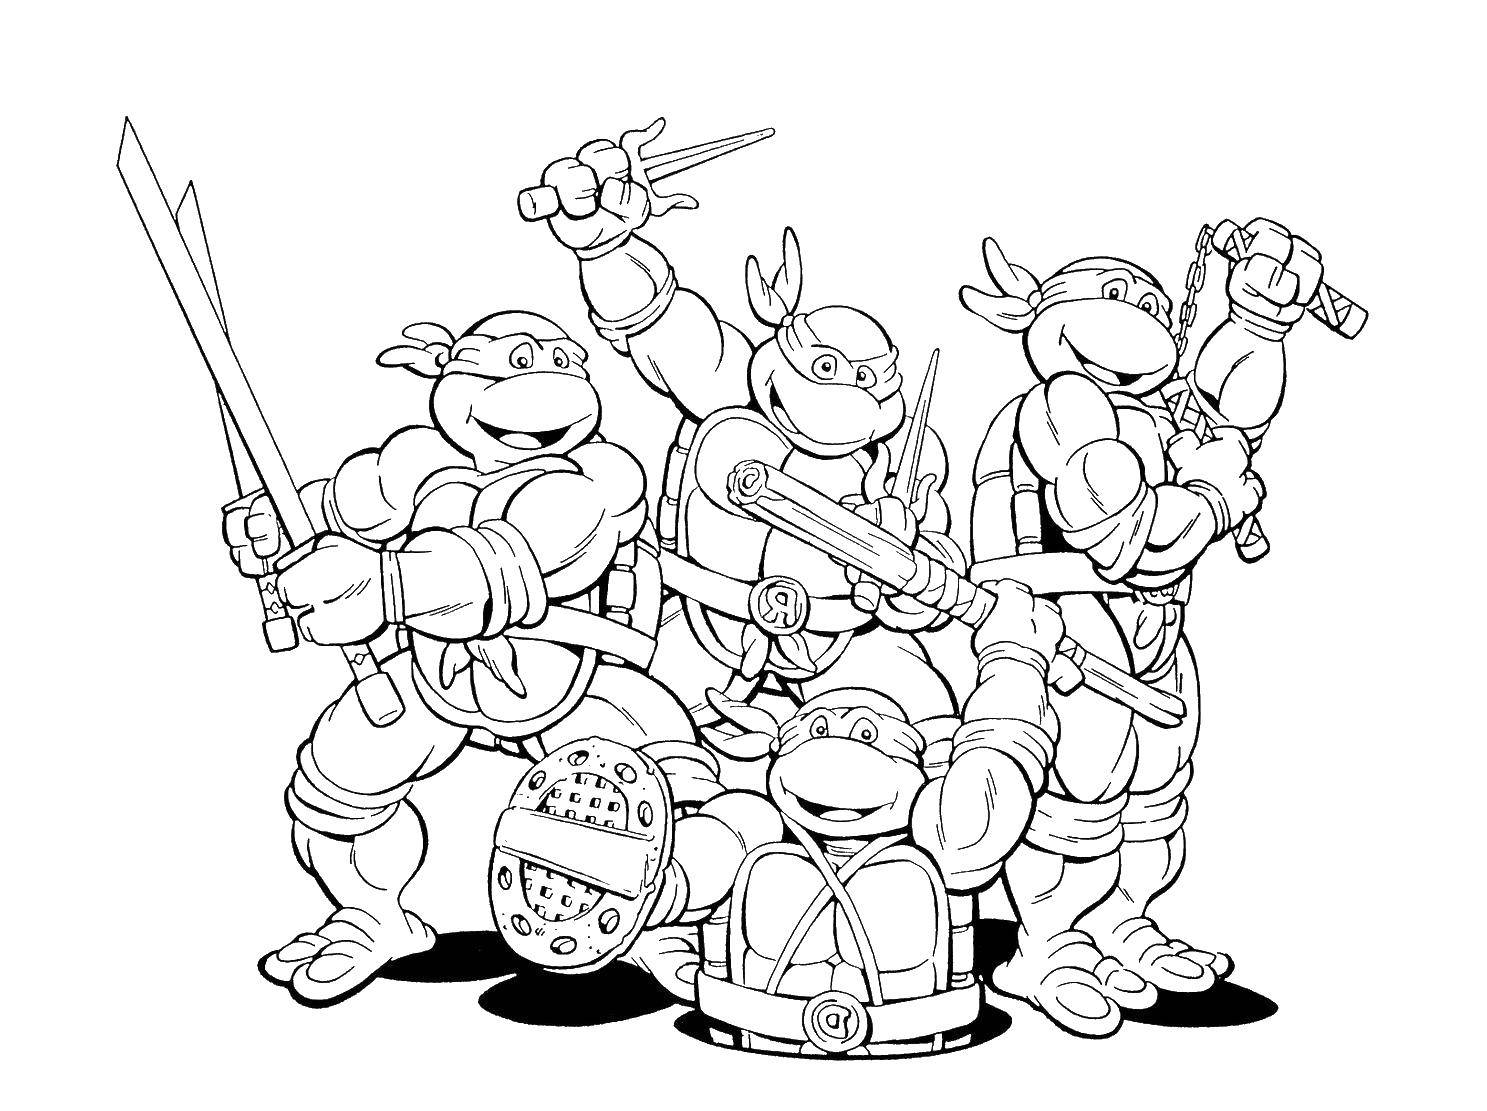 Coloring Cartoon teenage mutant ninja turtles. Category teenage mutant ninja turtles. Tags:  cartoon ninja turtles.